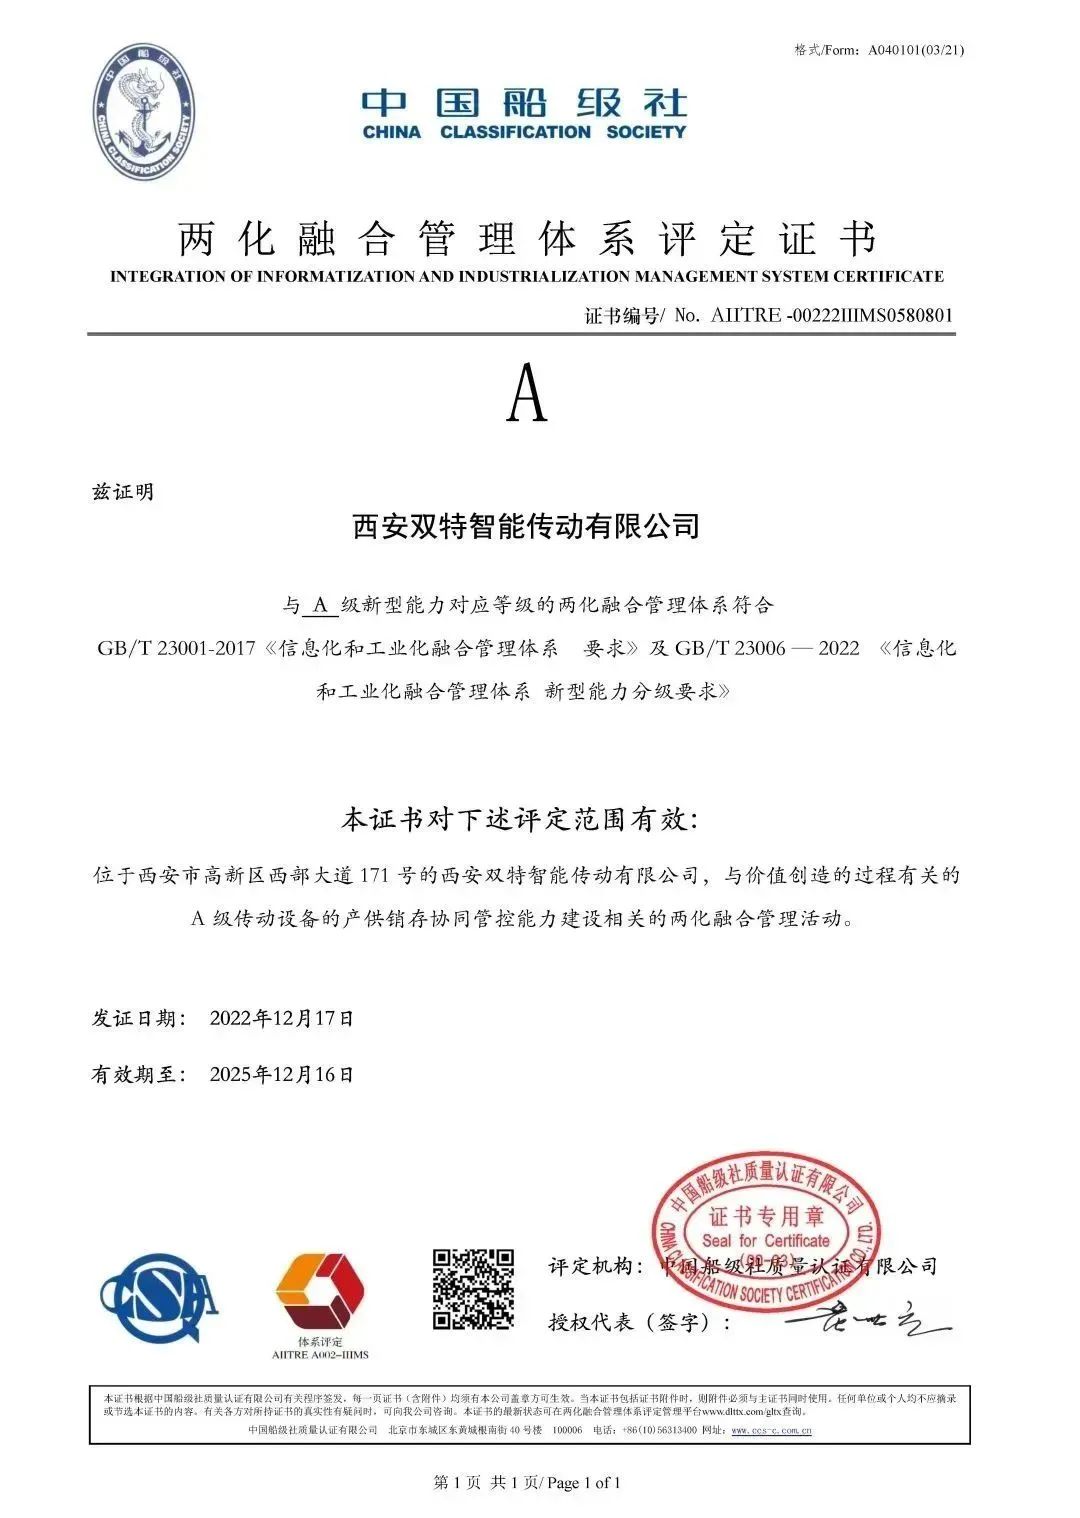 双特公司获得两化融合管理体系评定证书